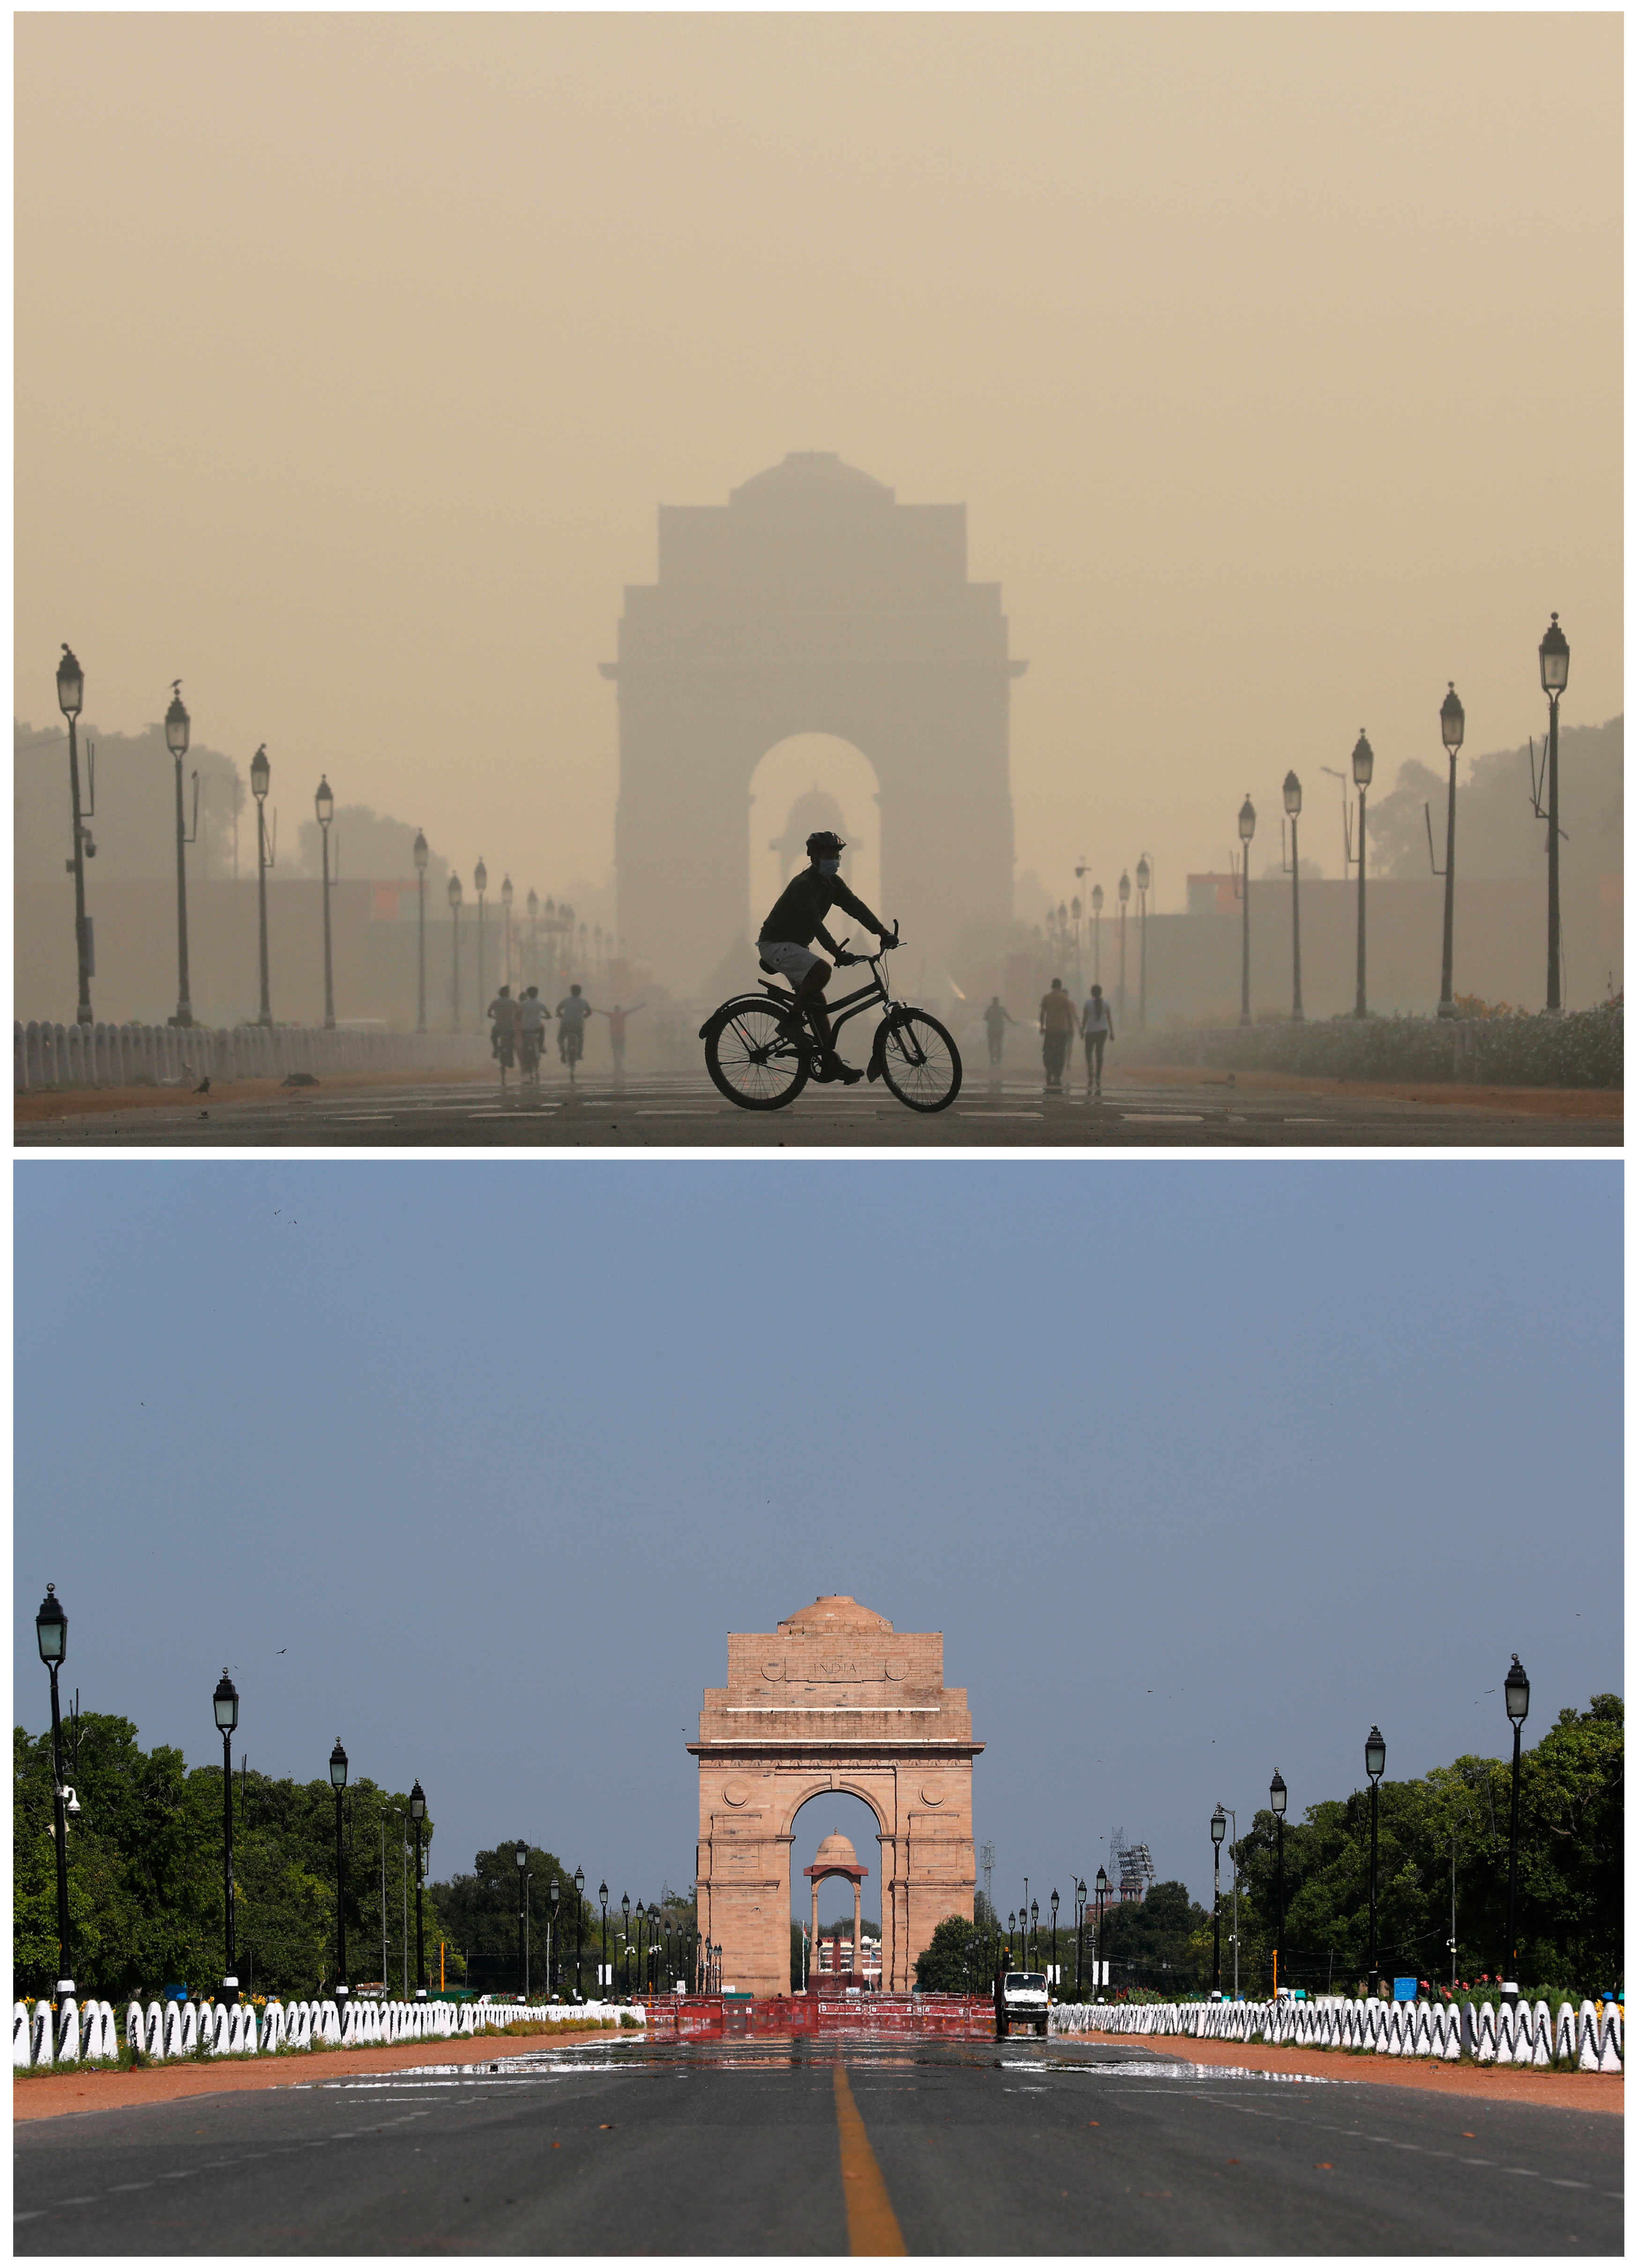 Fotos de un monumento en India antes y durante el confinamiento ilustran como bajaron en cuestión de días los niveles de contaminación, consecuencia de la suspensión de buena parte de las emisiones de carbono. REUTERS/Anushree Fadnavis/Adnan Abidi